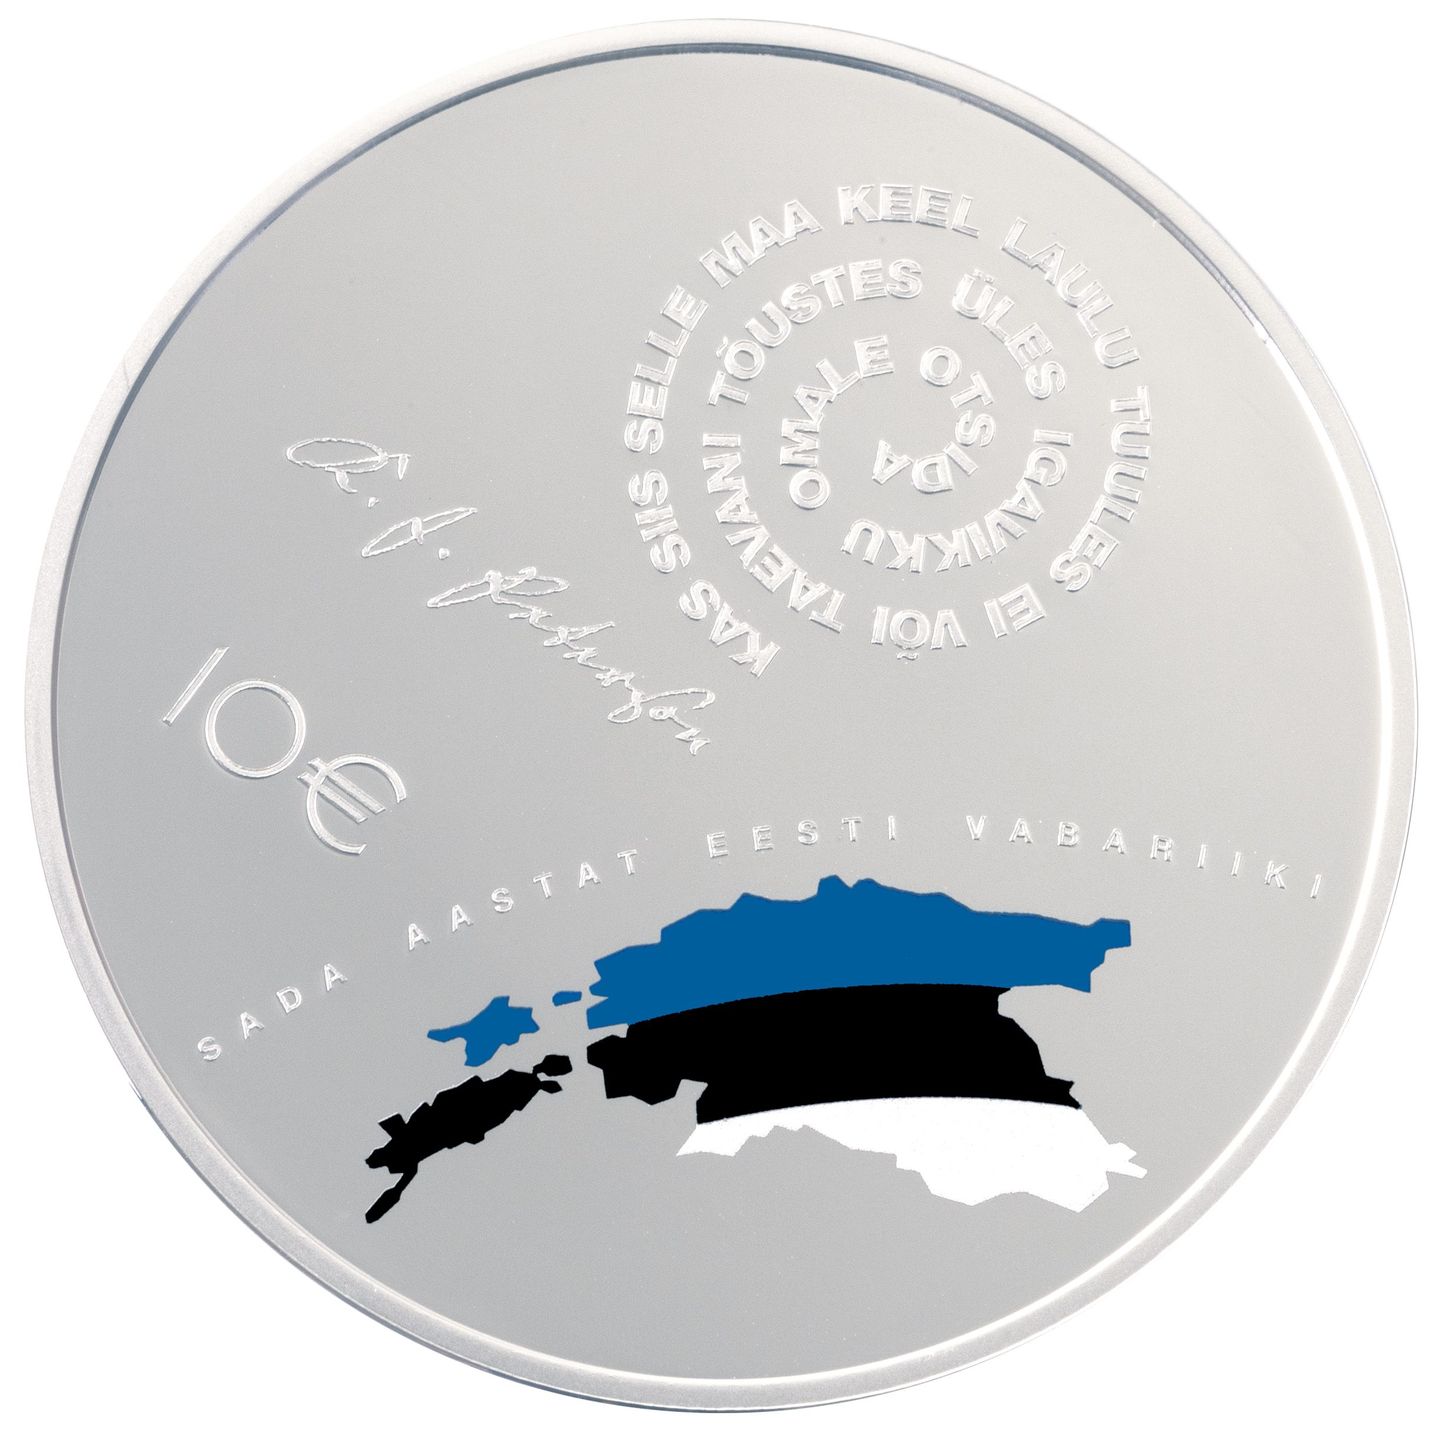 Eesti Vabariigi 100. sünnipäevale pühendatud hõbedase meenemündi on kujundanud Margus Kadarik ja Toomas Niklus.